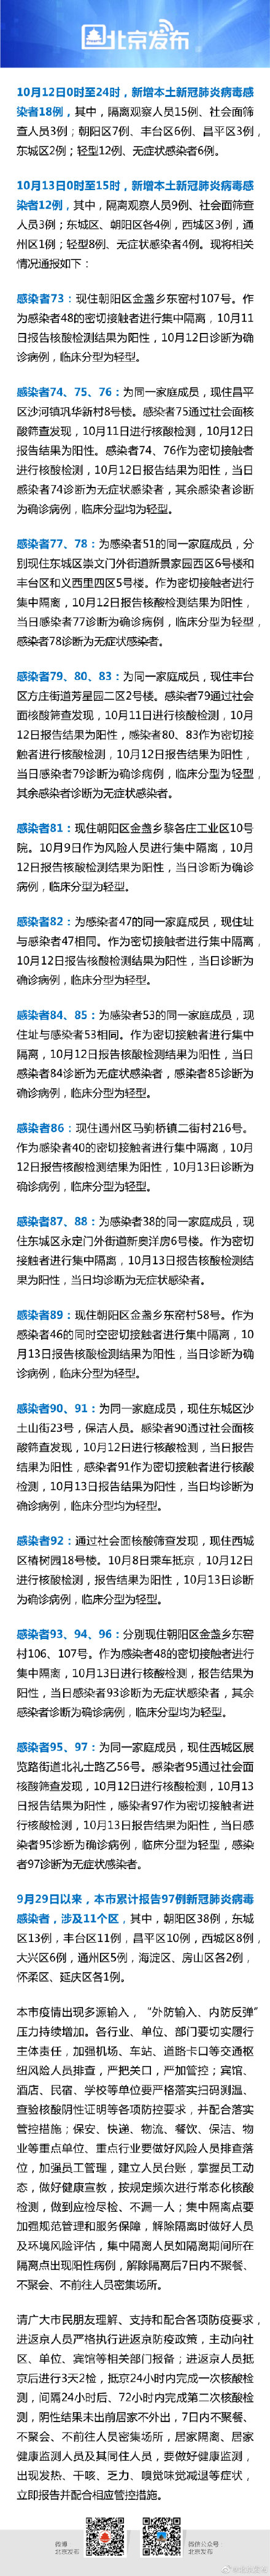 10月13日0时至15时北京新增本土感染者12例，涉及4区，详情公布